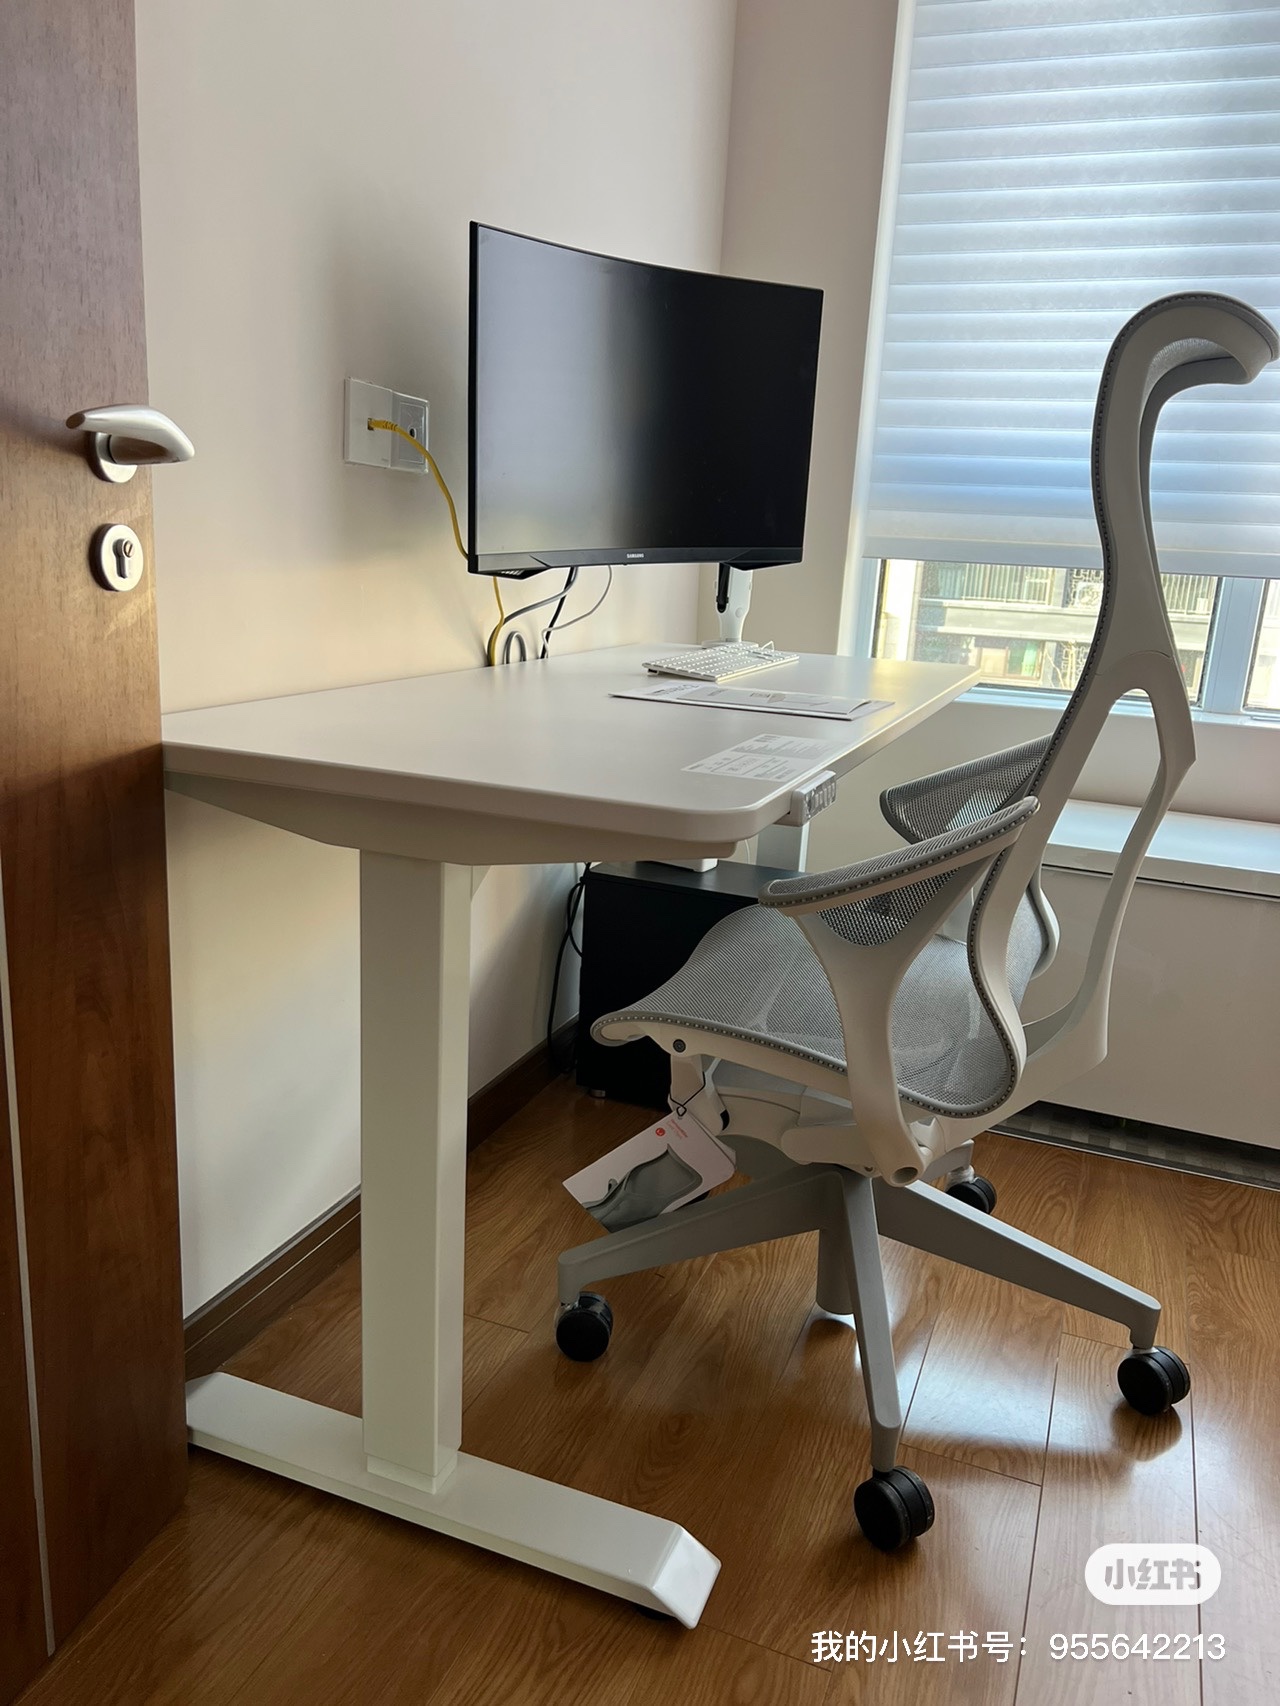 T2L电动升降桌电脑桌家用健康站立办公桌高度可调节双电机智能桌